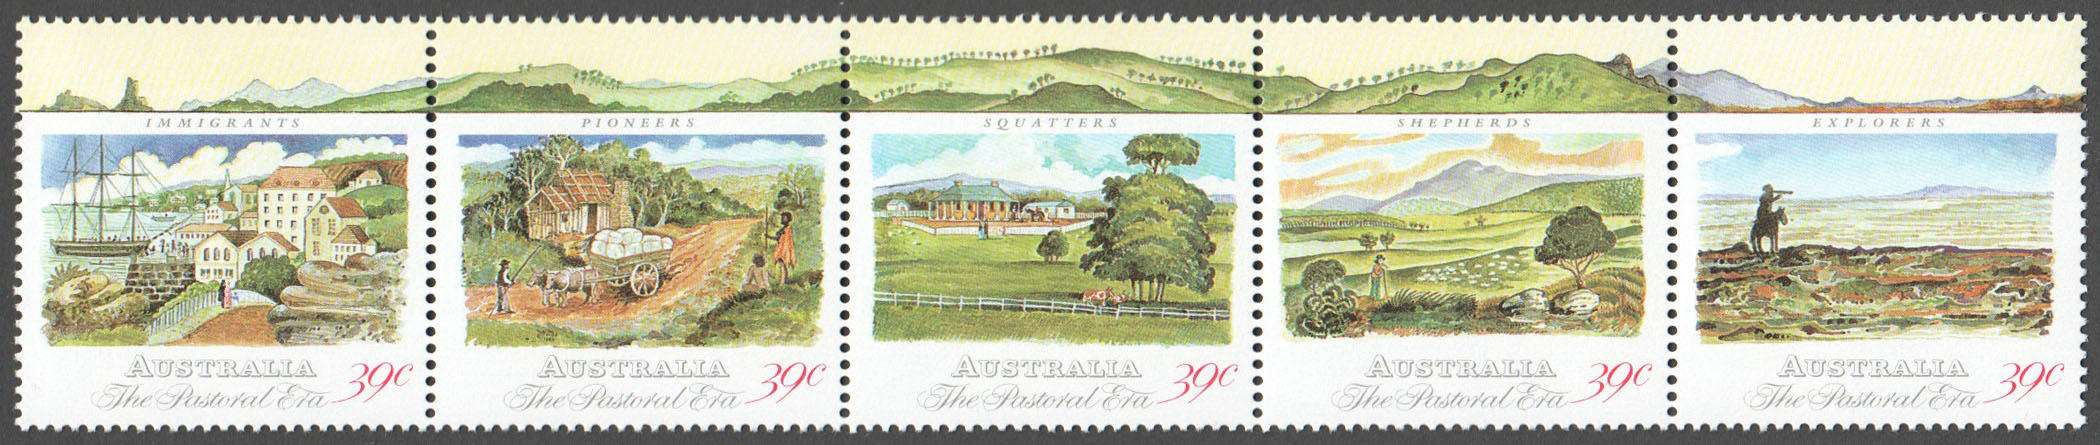 Australia Scott 1141 MNH (A2-12)